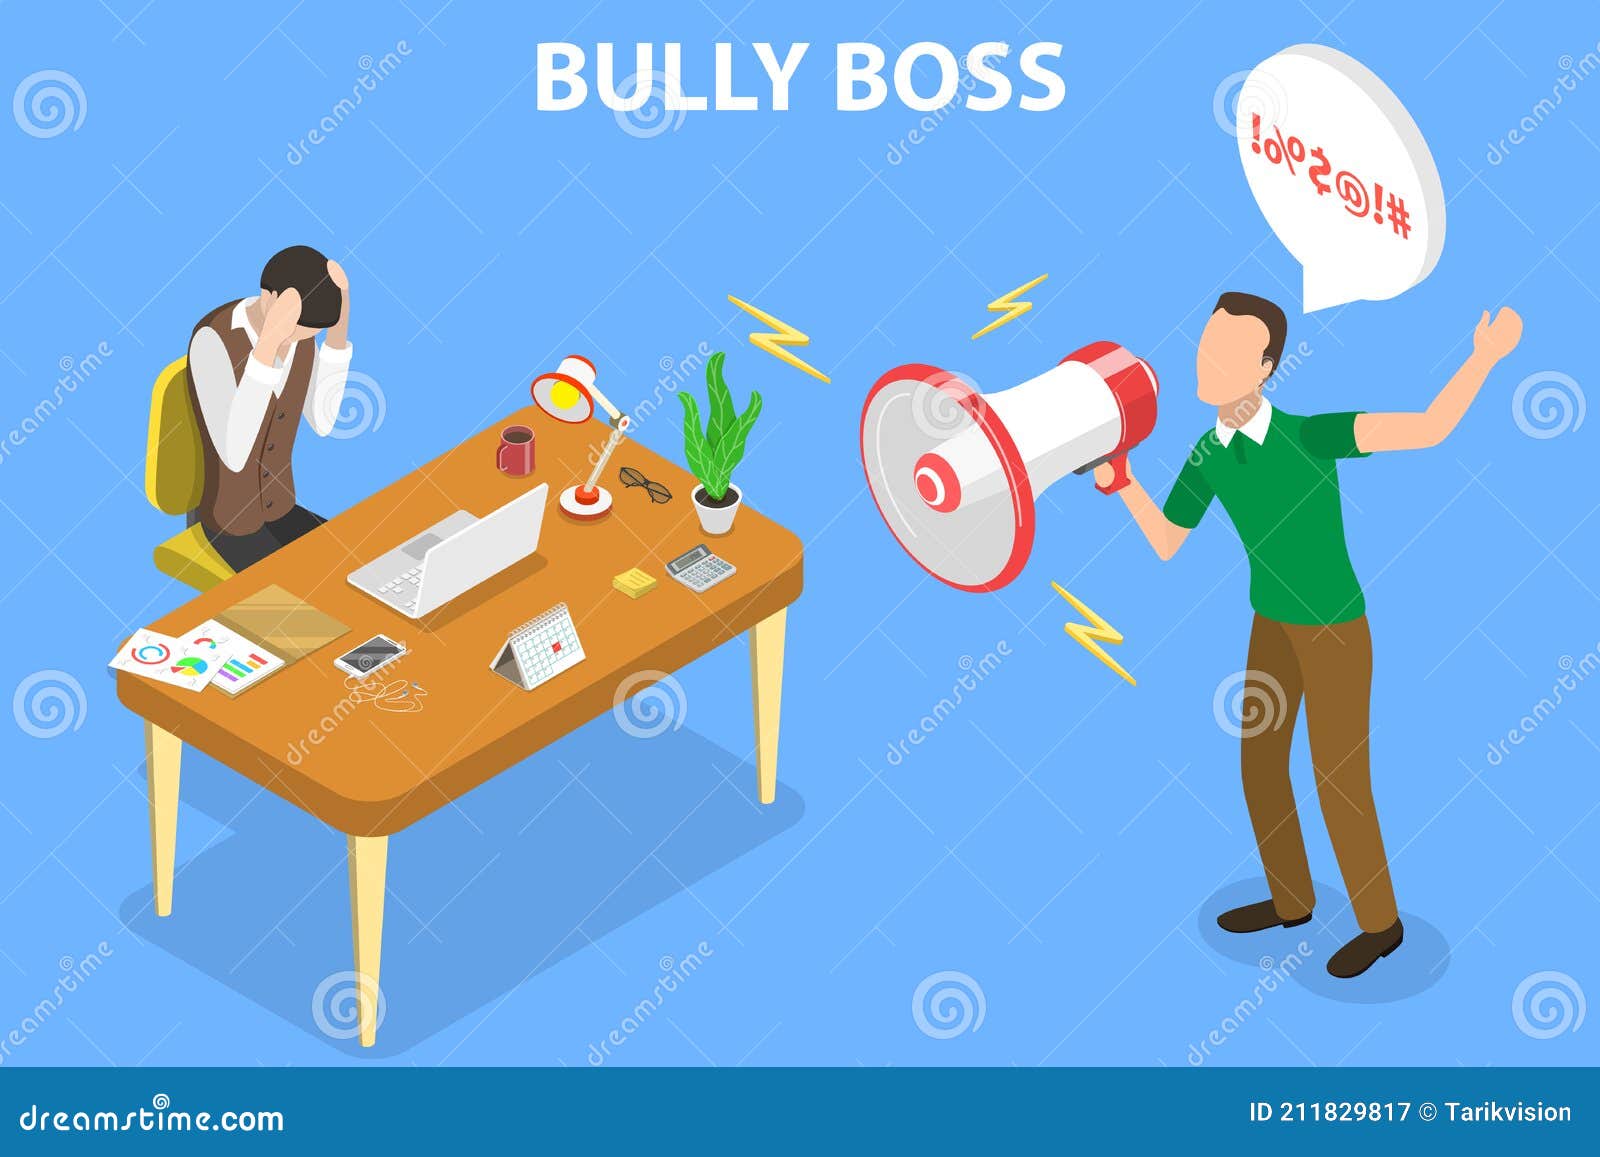 Boss Status Bully's